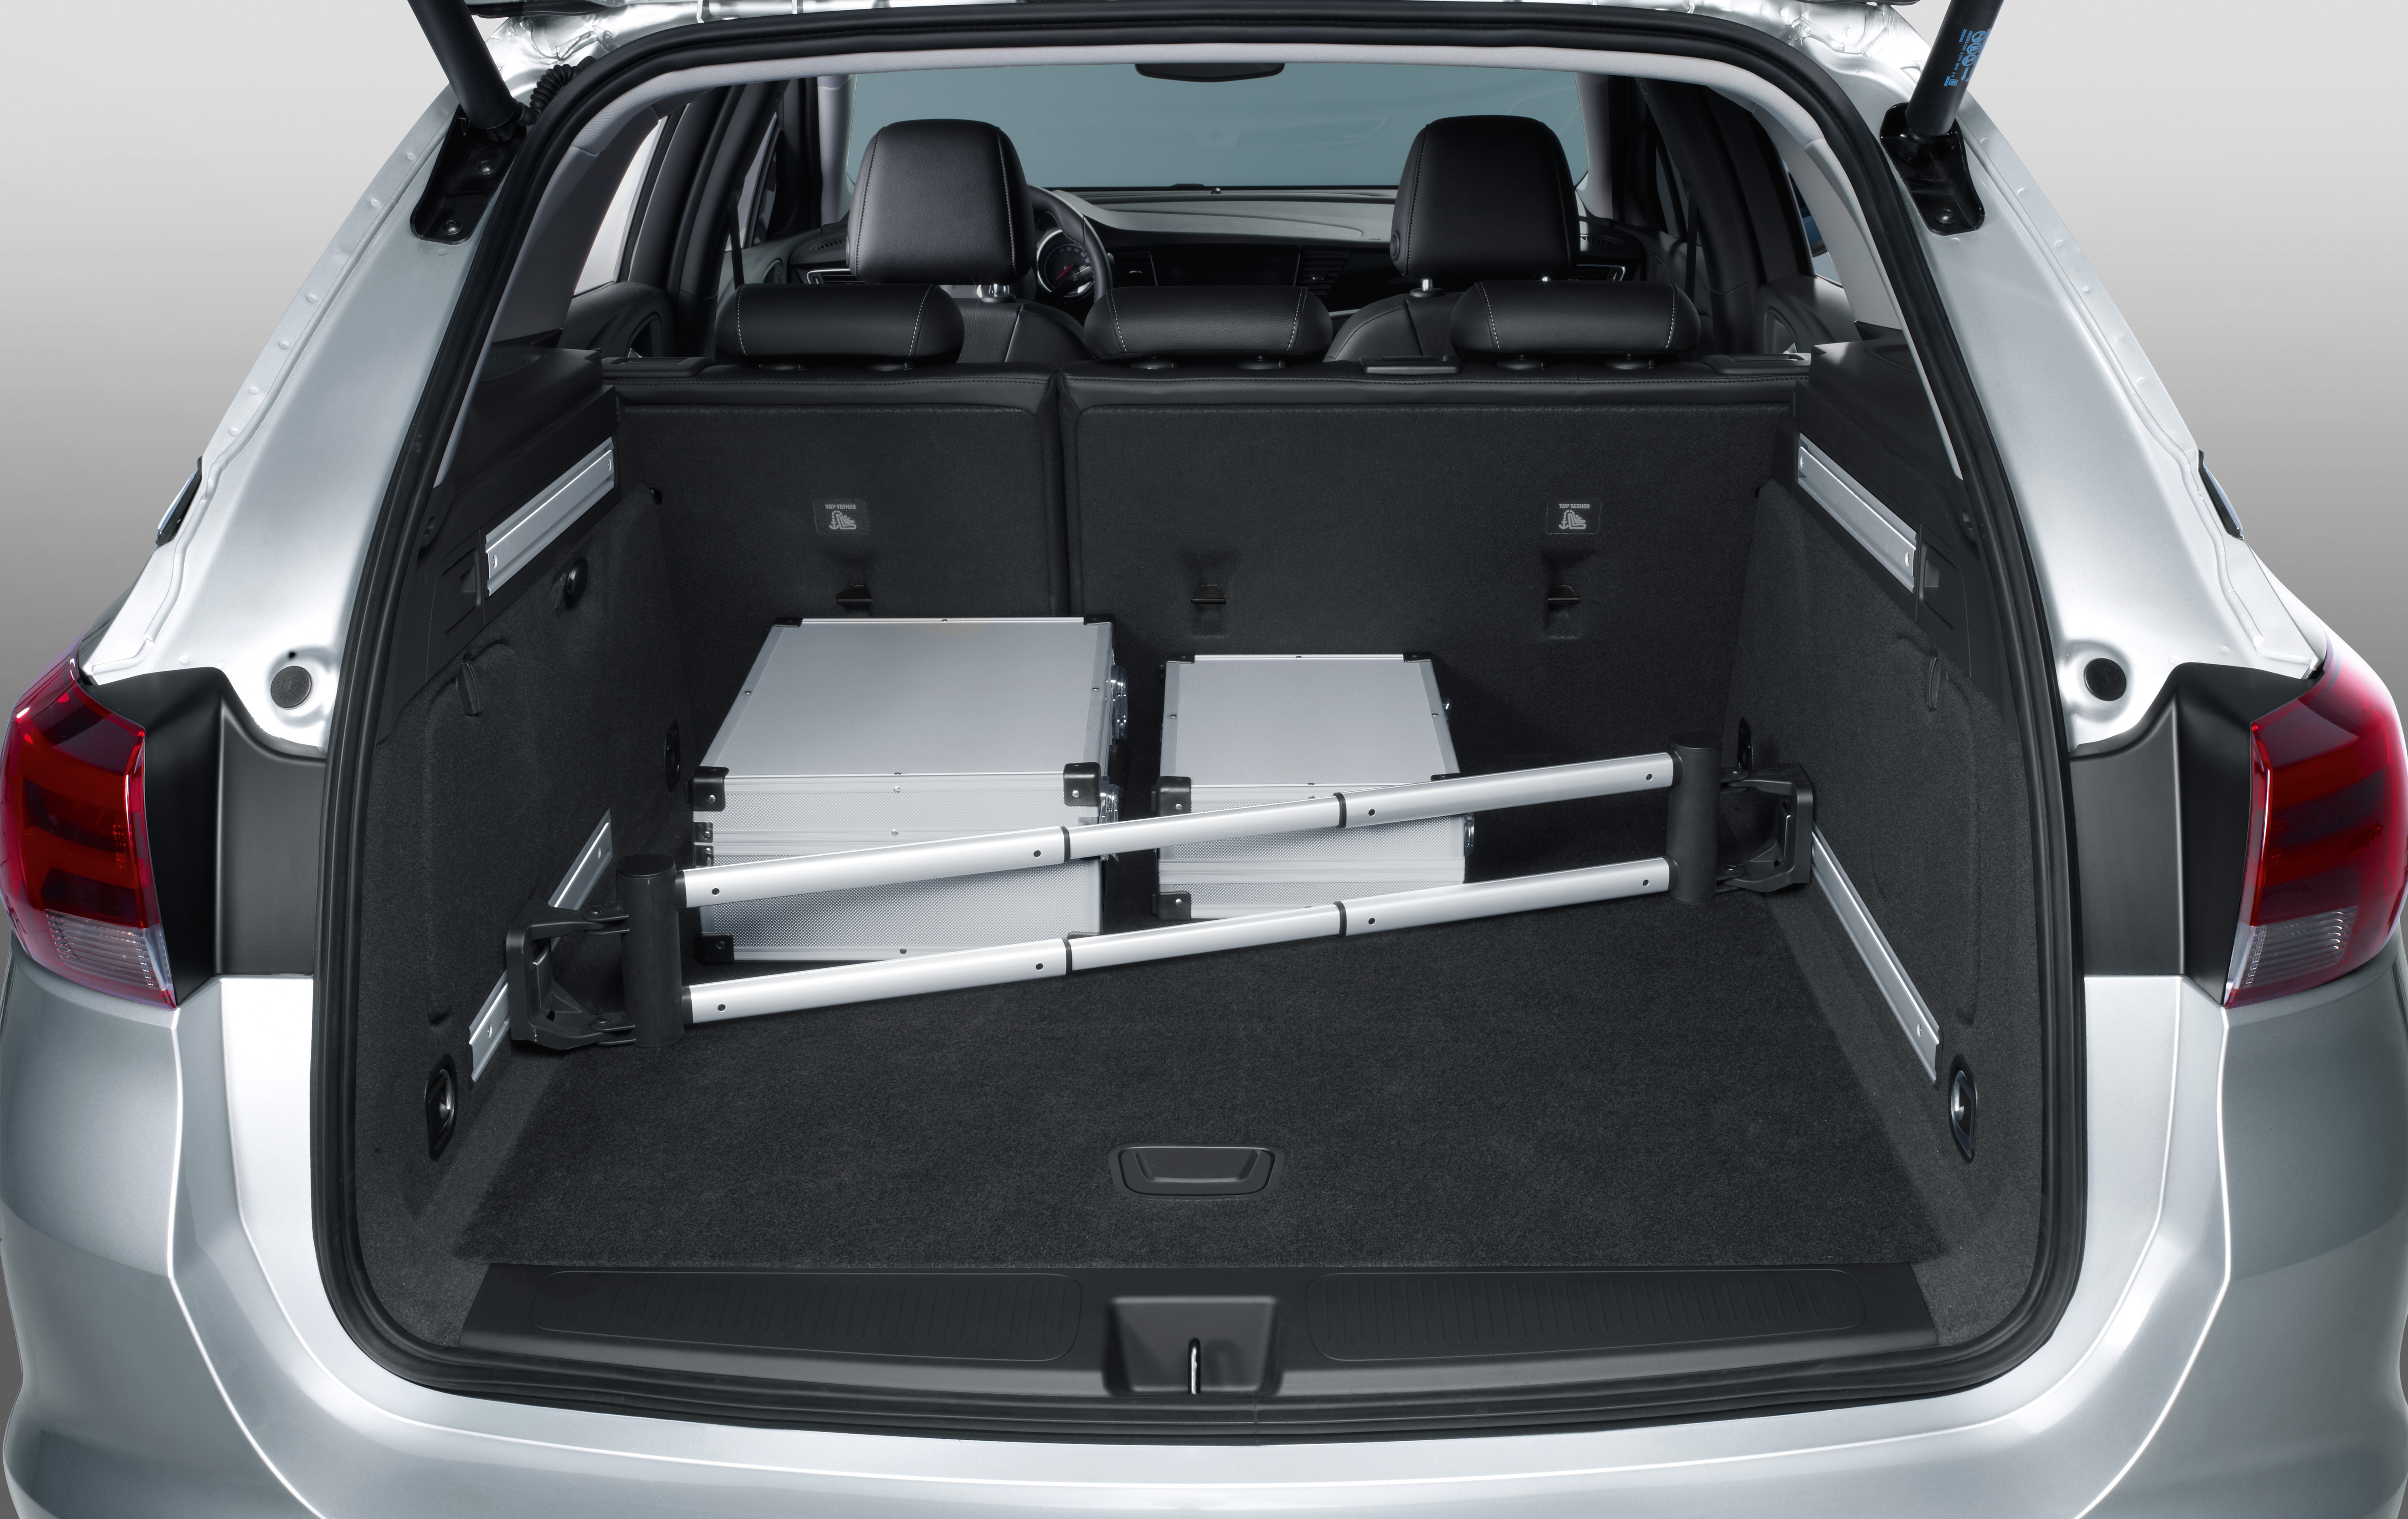 Купить багажника опель зафира б. Opel Astra Sports Tourer багажник. Astra h 2011 универсал багажник. Opel Astra k универсал багажник.